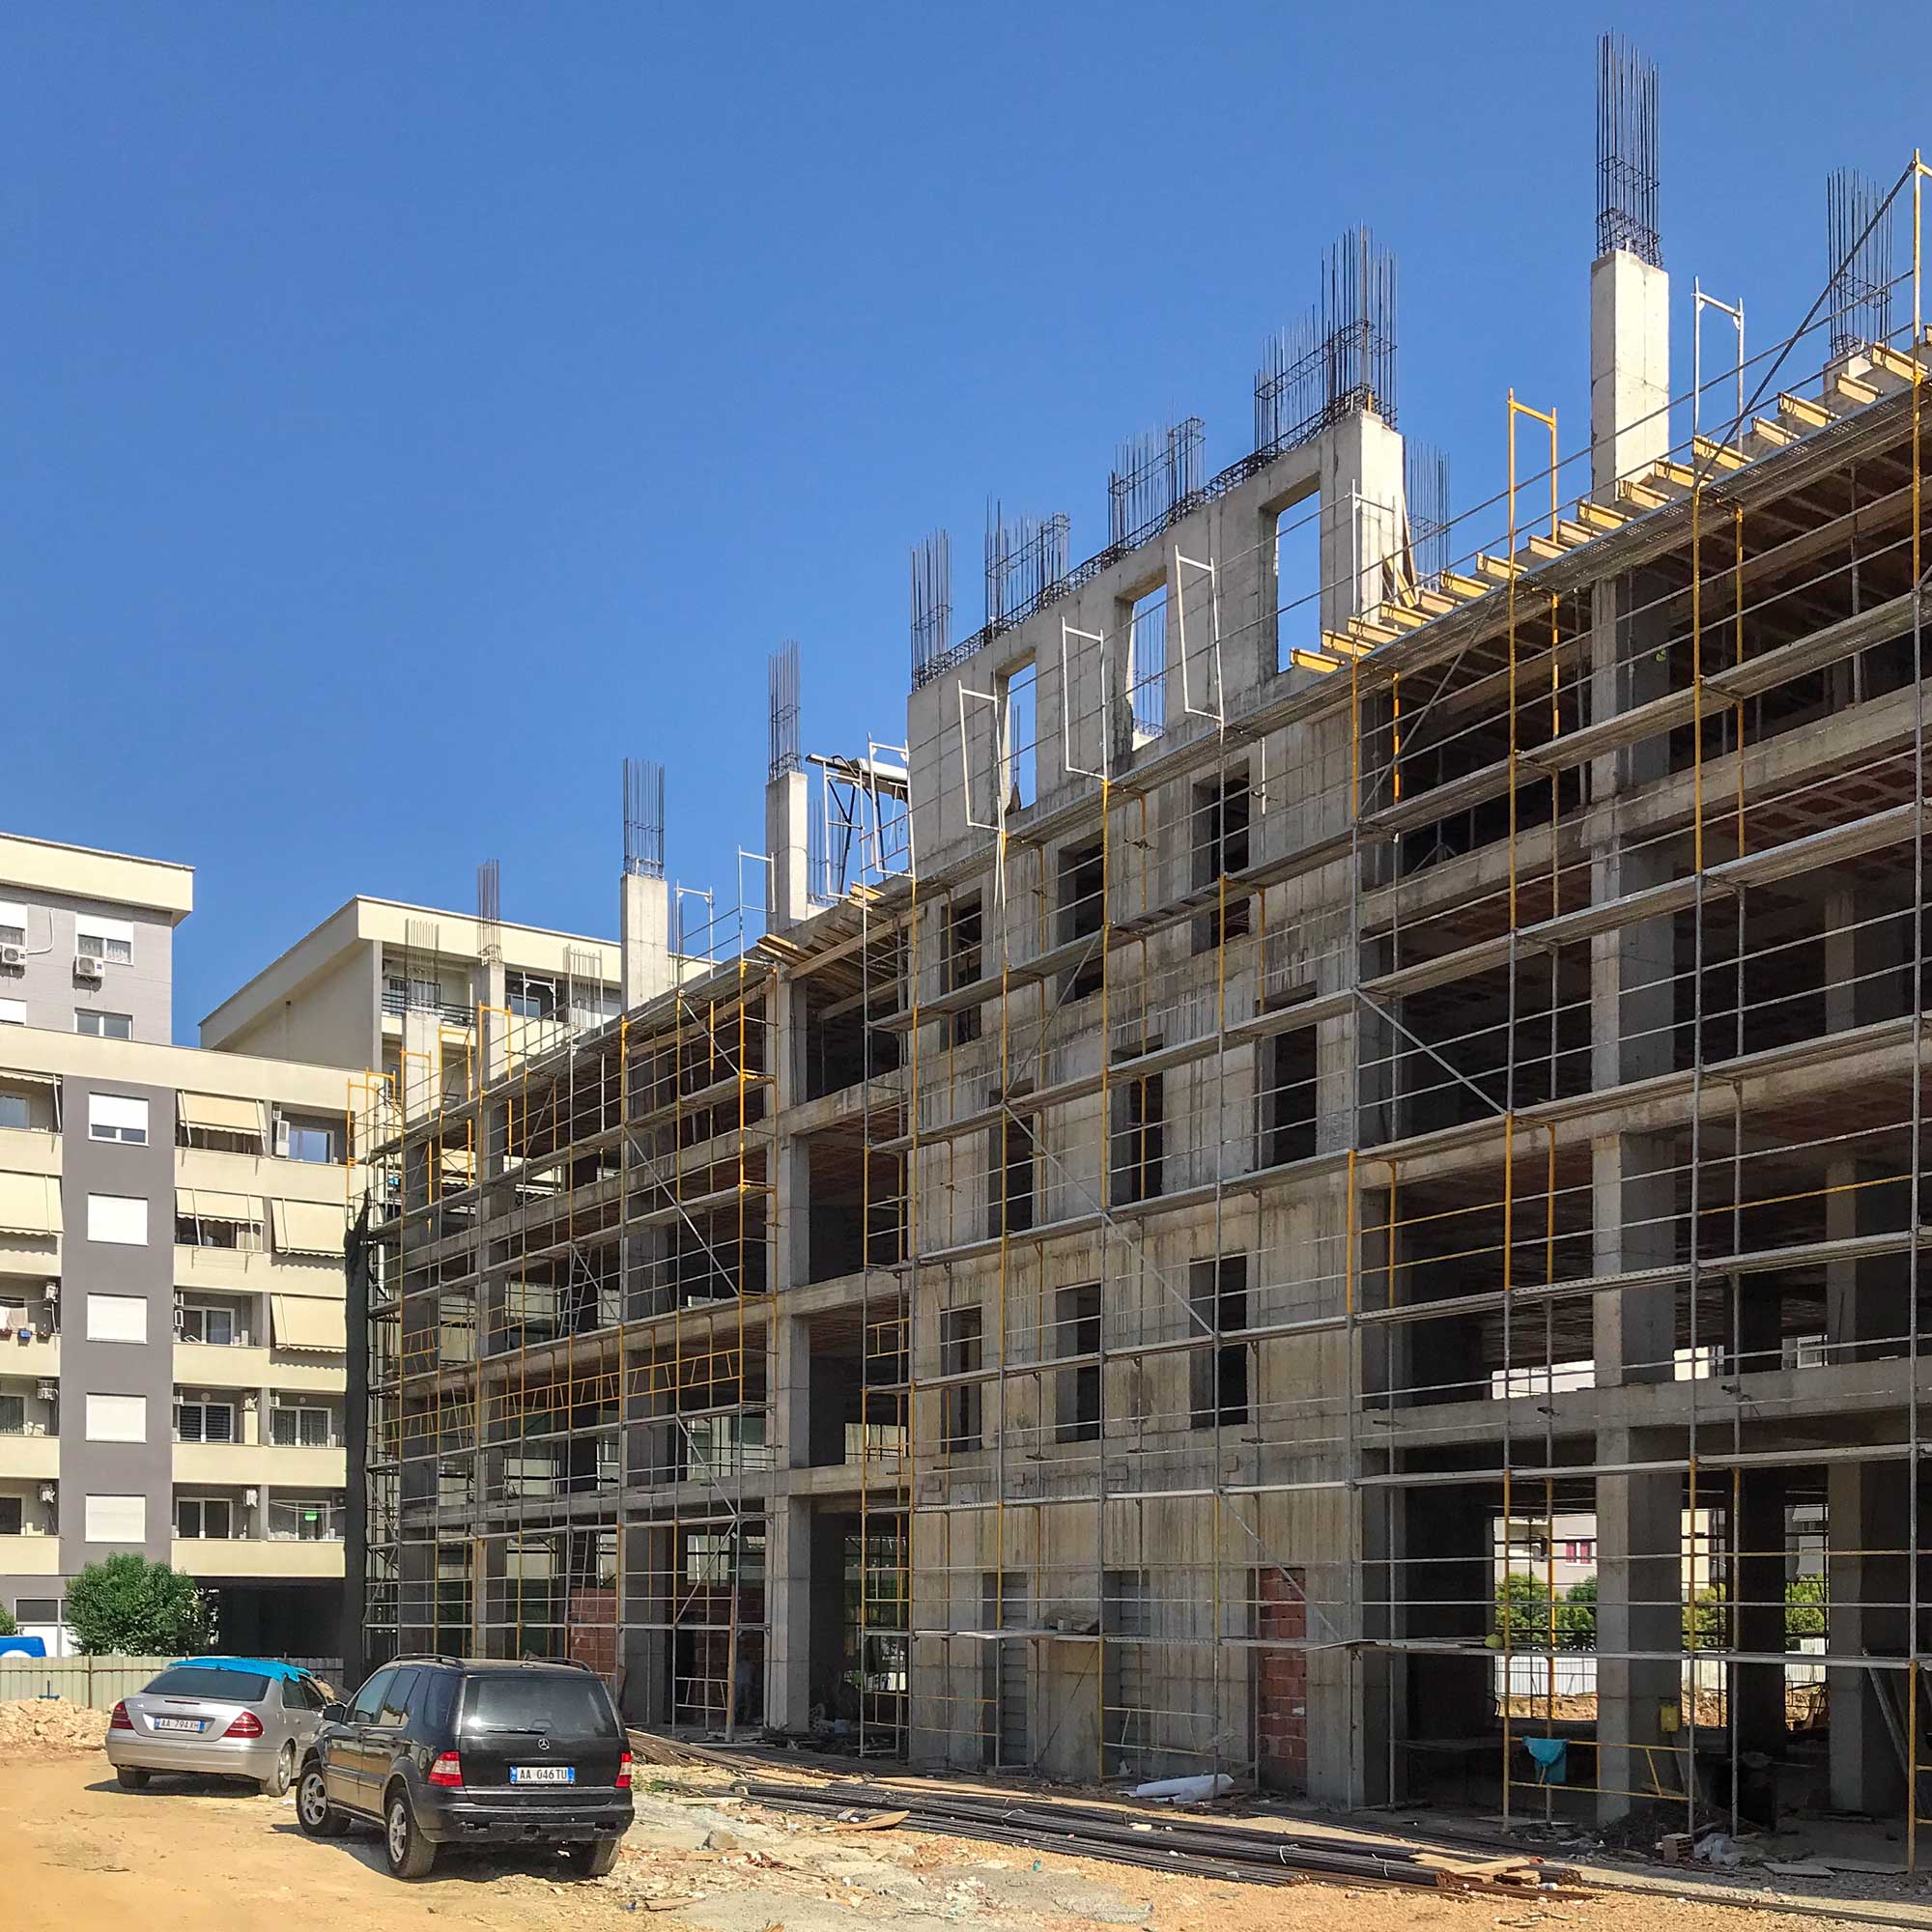 Tirana “White City Block” Work in progress